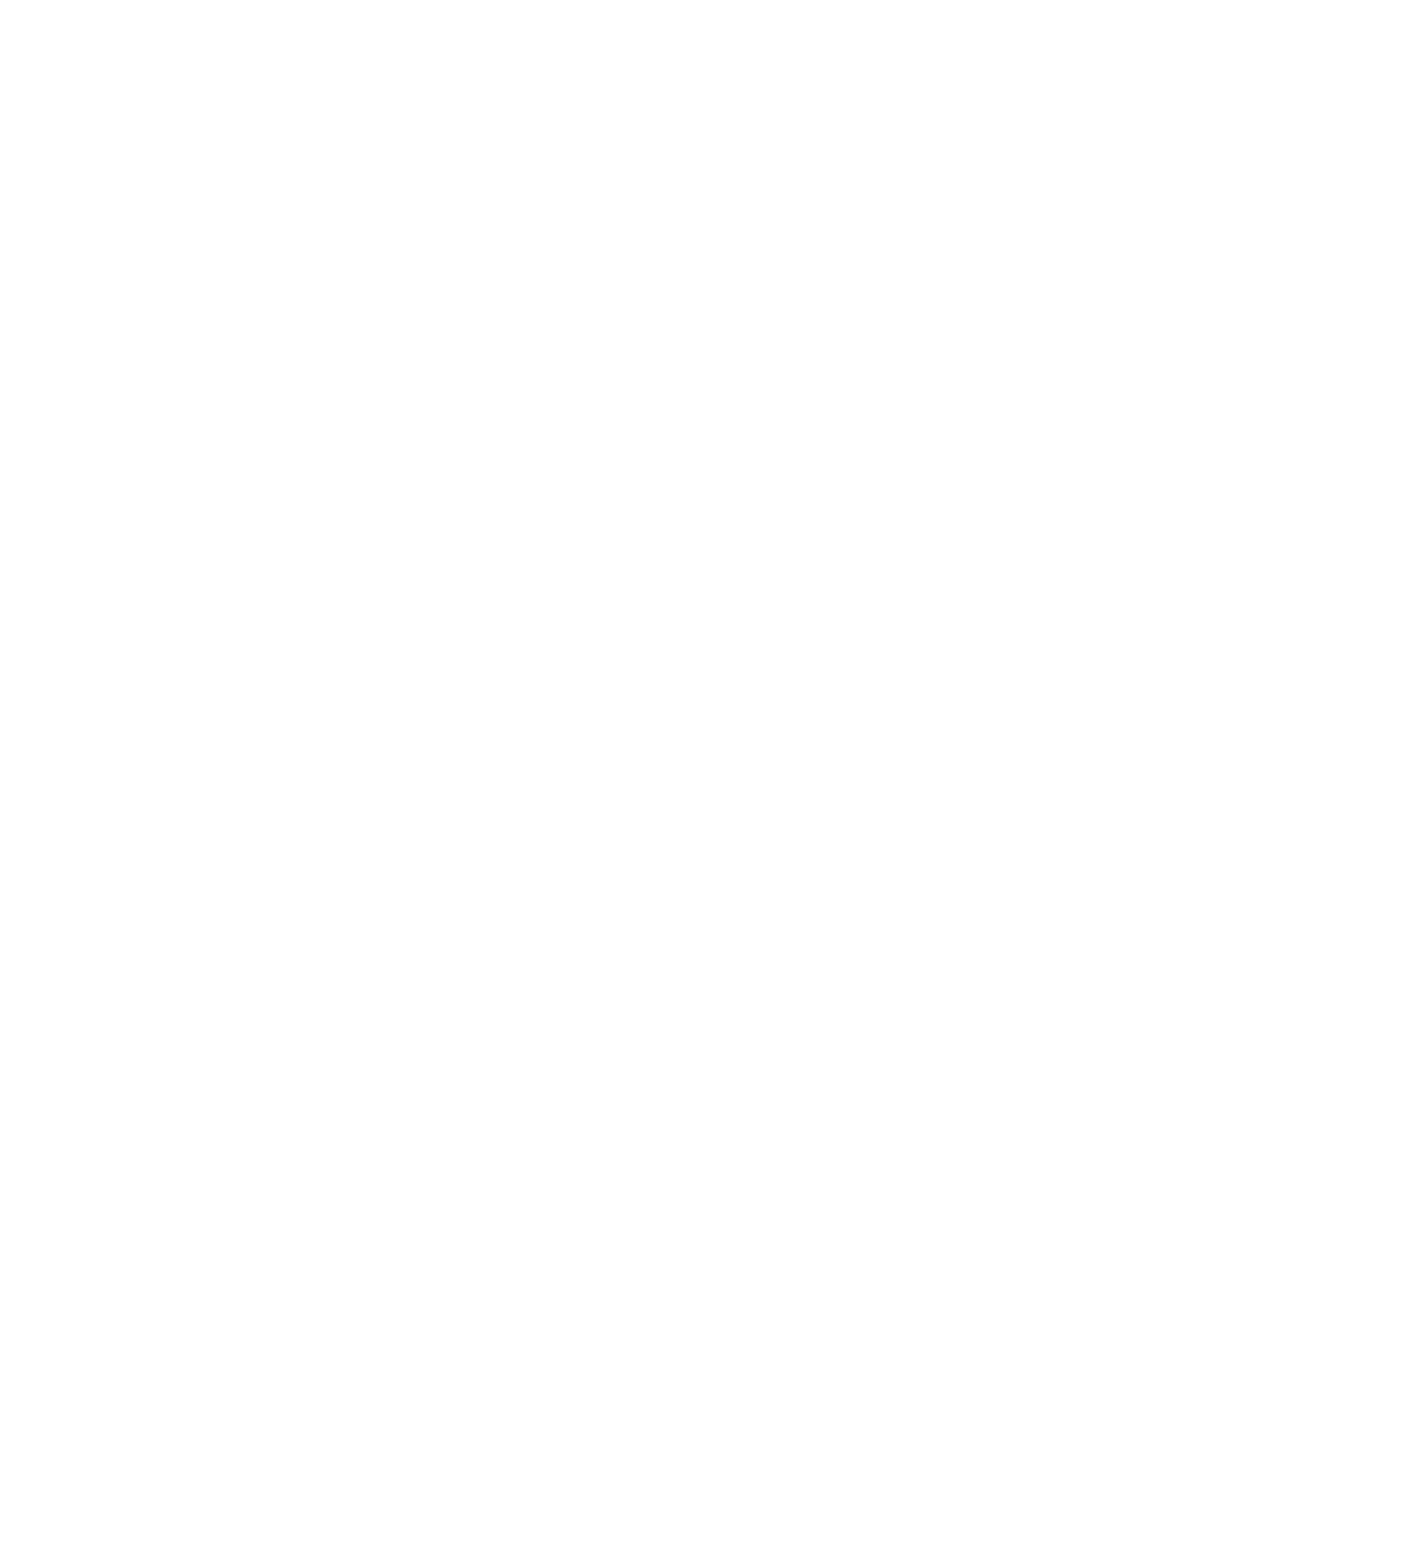 Vistry Group logo pour fonds sombres (PNG transparent)